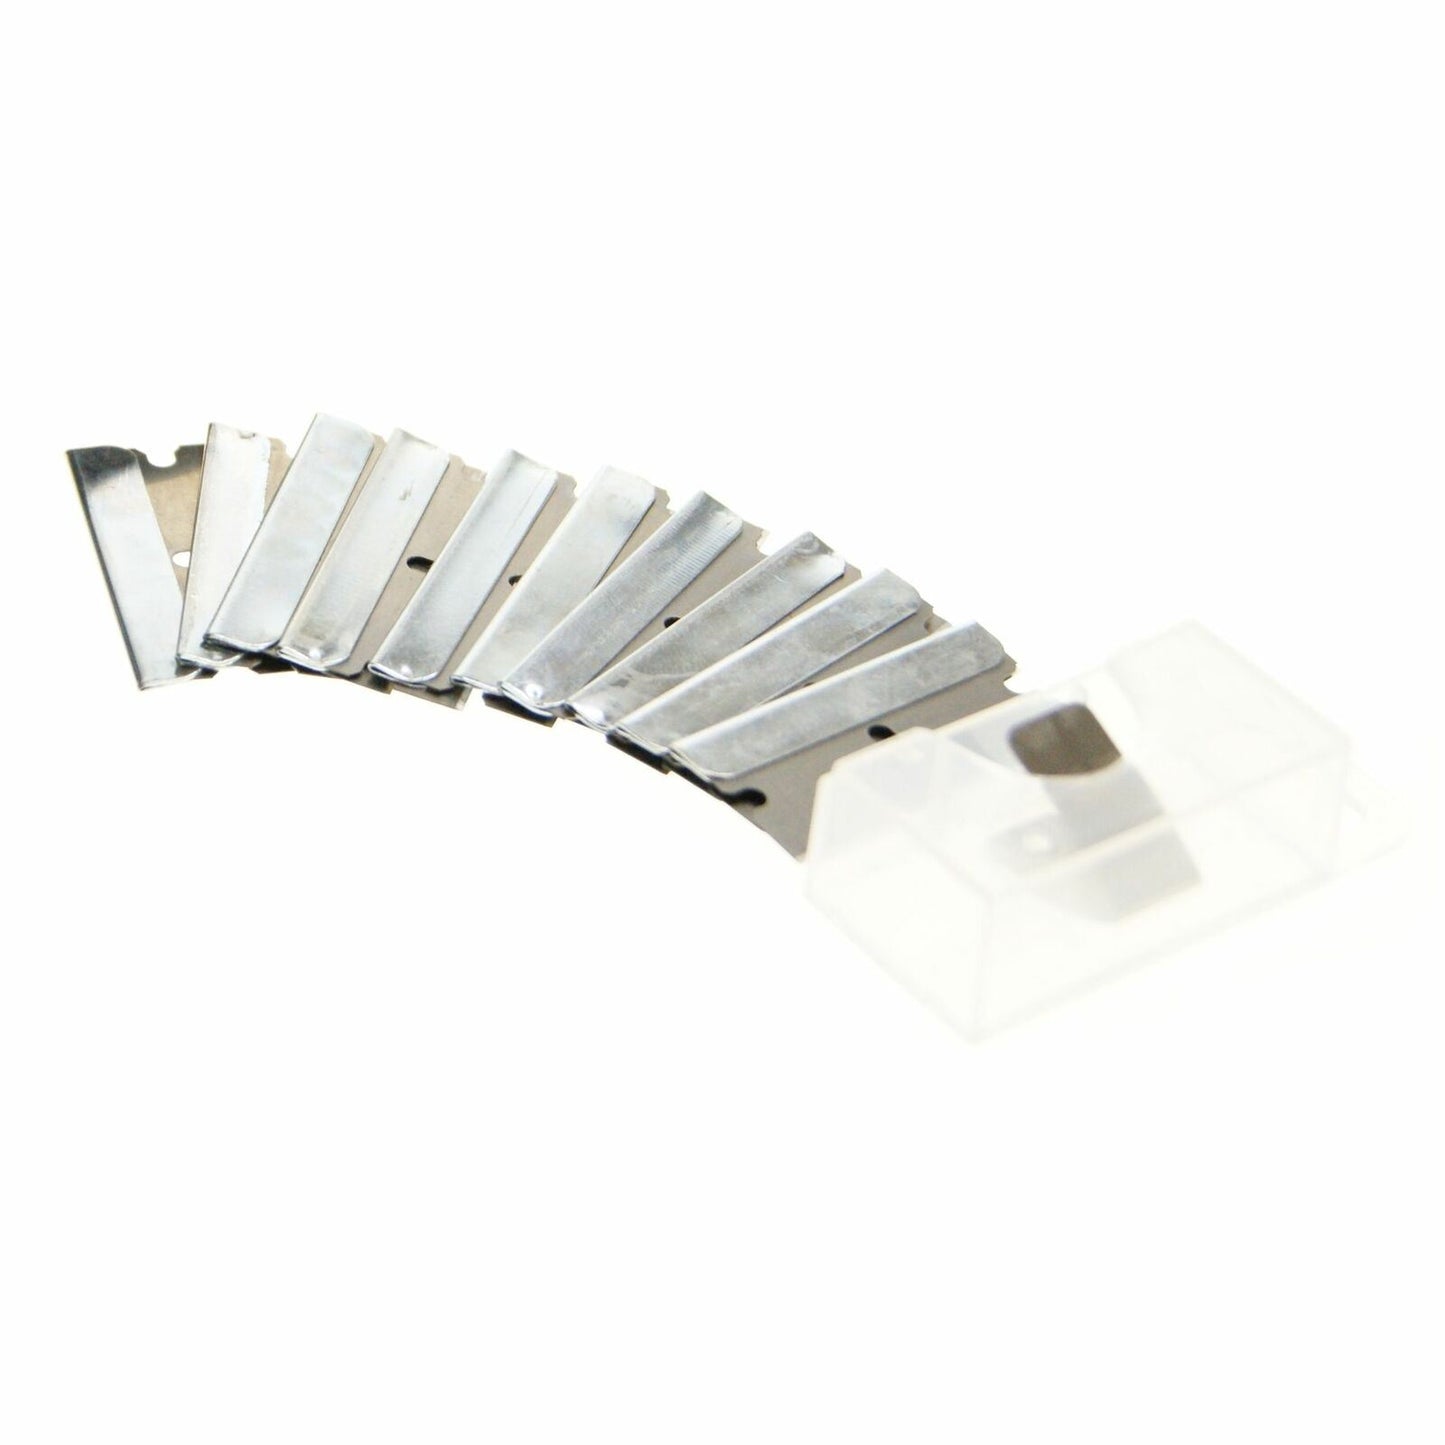 Replacement Blades for Ex-Pro Ceramic Hob Scraper 10 Pack